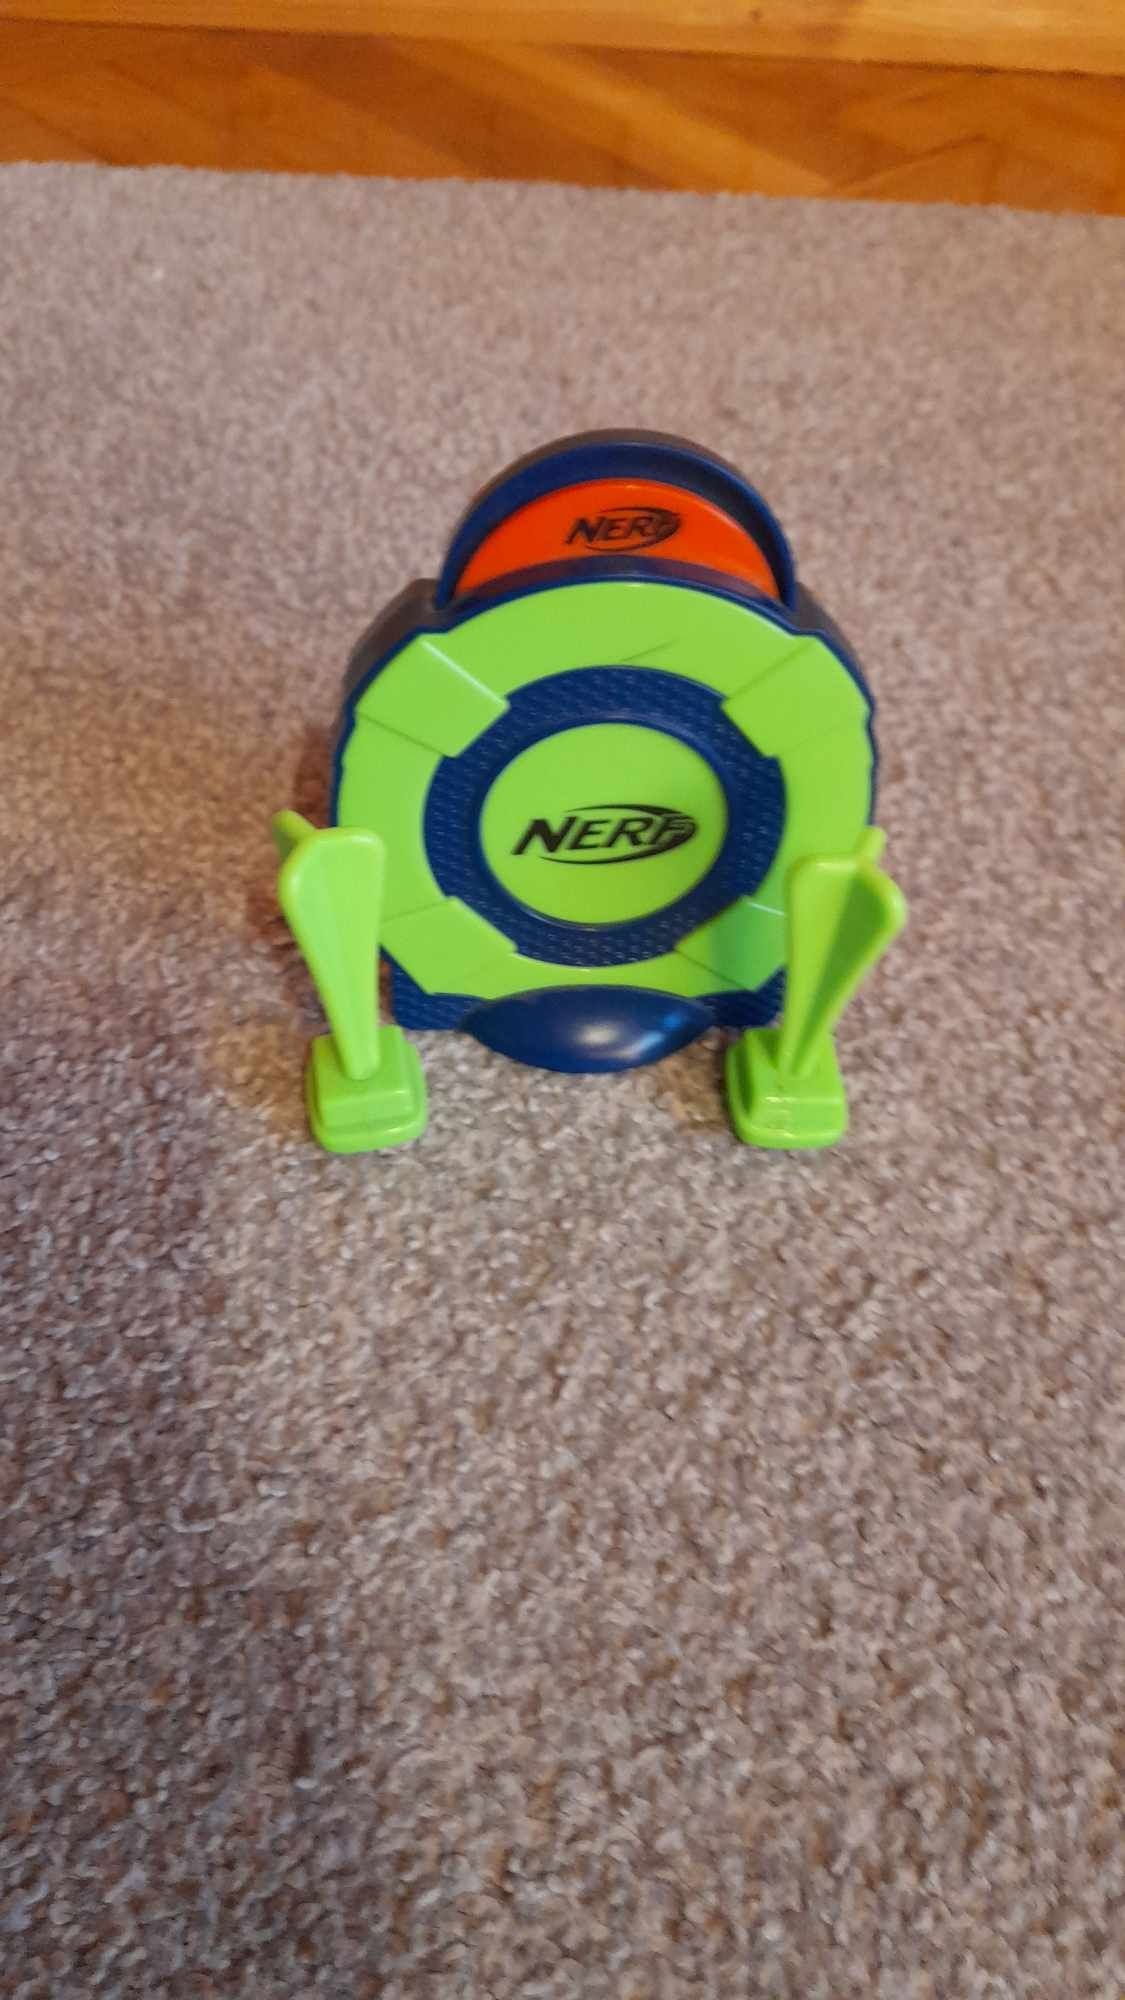 Nerf zabawka dla dzieci